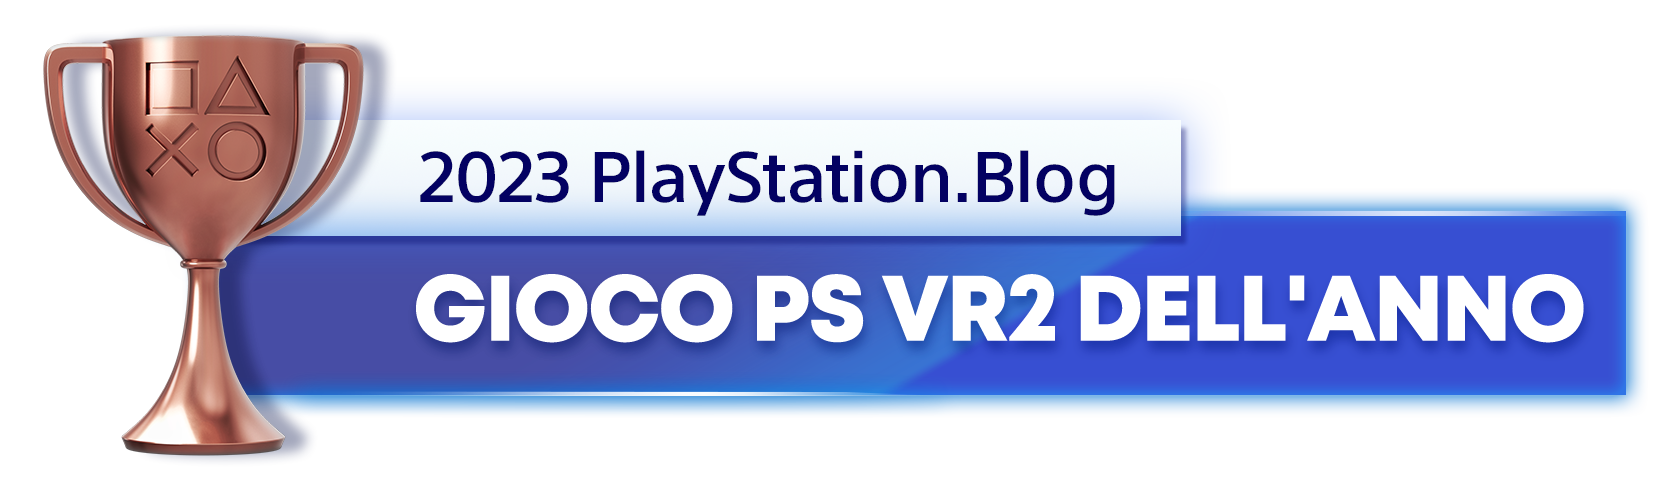  "Vincitore del trofeo bronzo per il titolo di Gioco PS VR2 dell'anno 2023 del PlayStation.Blog"